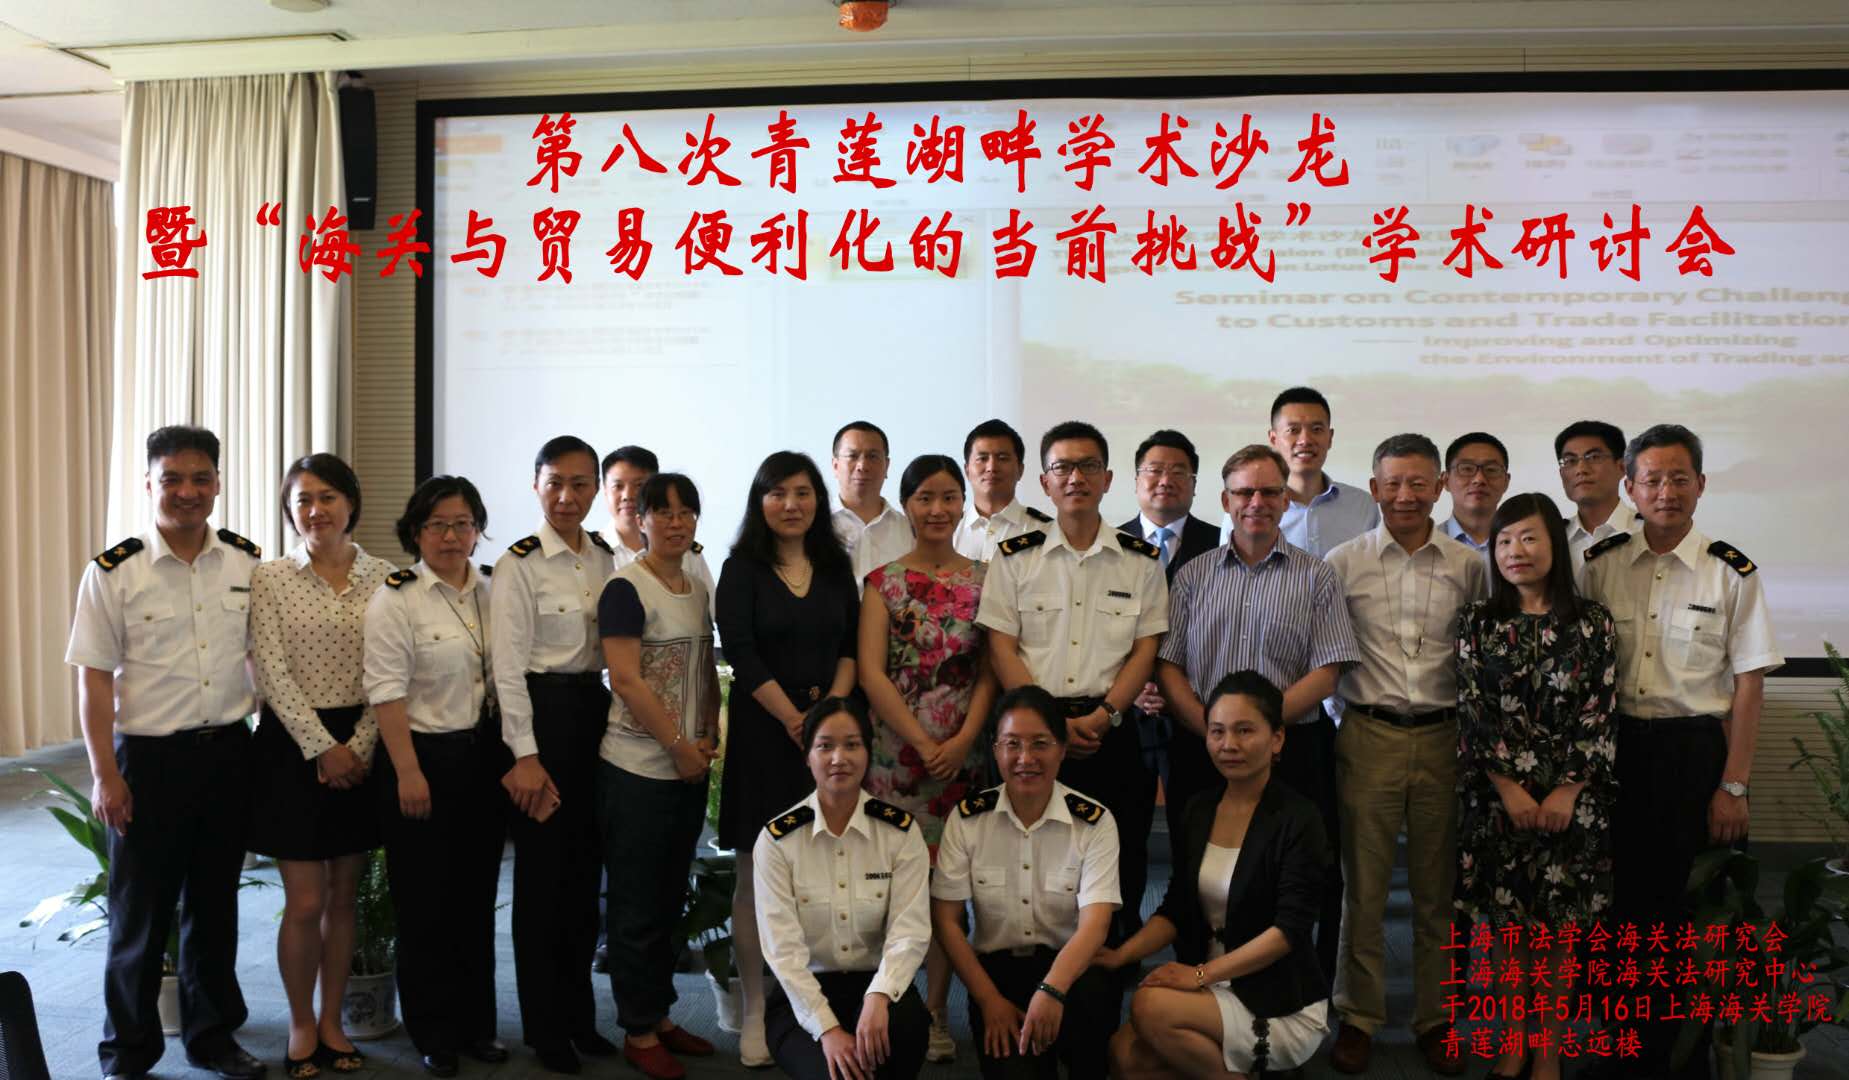 我所主任张严锋律师出席上海海关学院组织学术研讨会